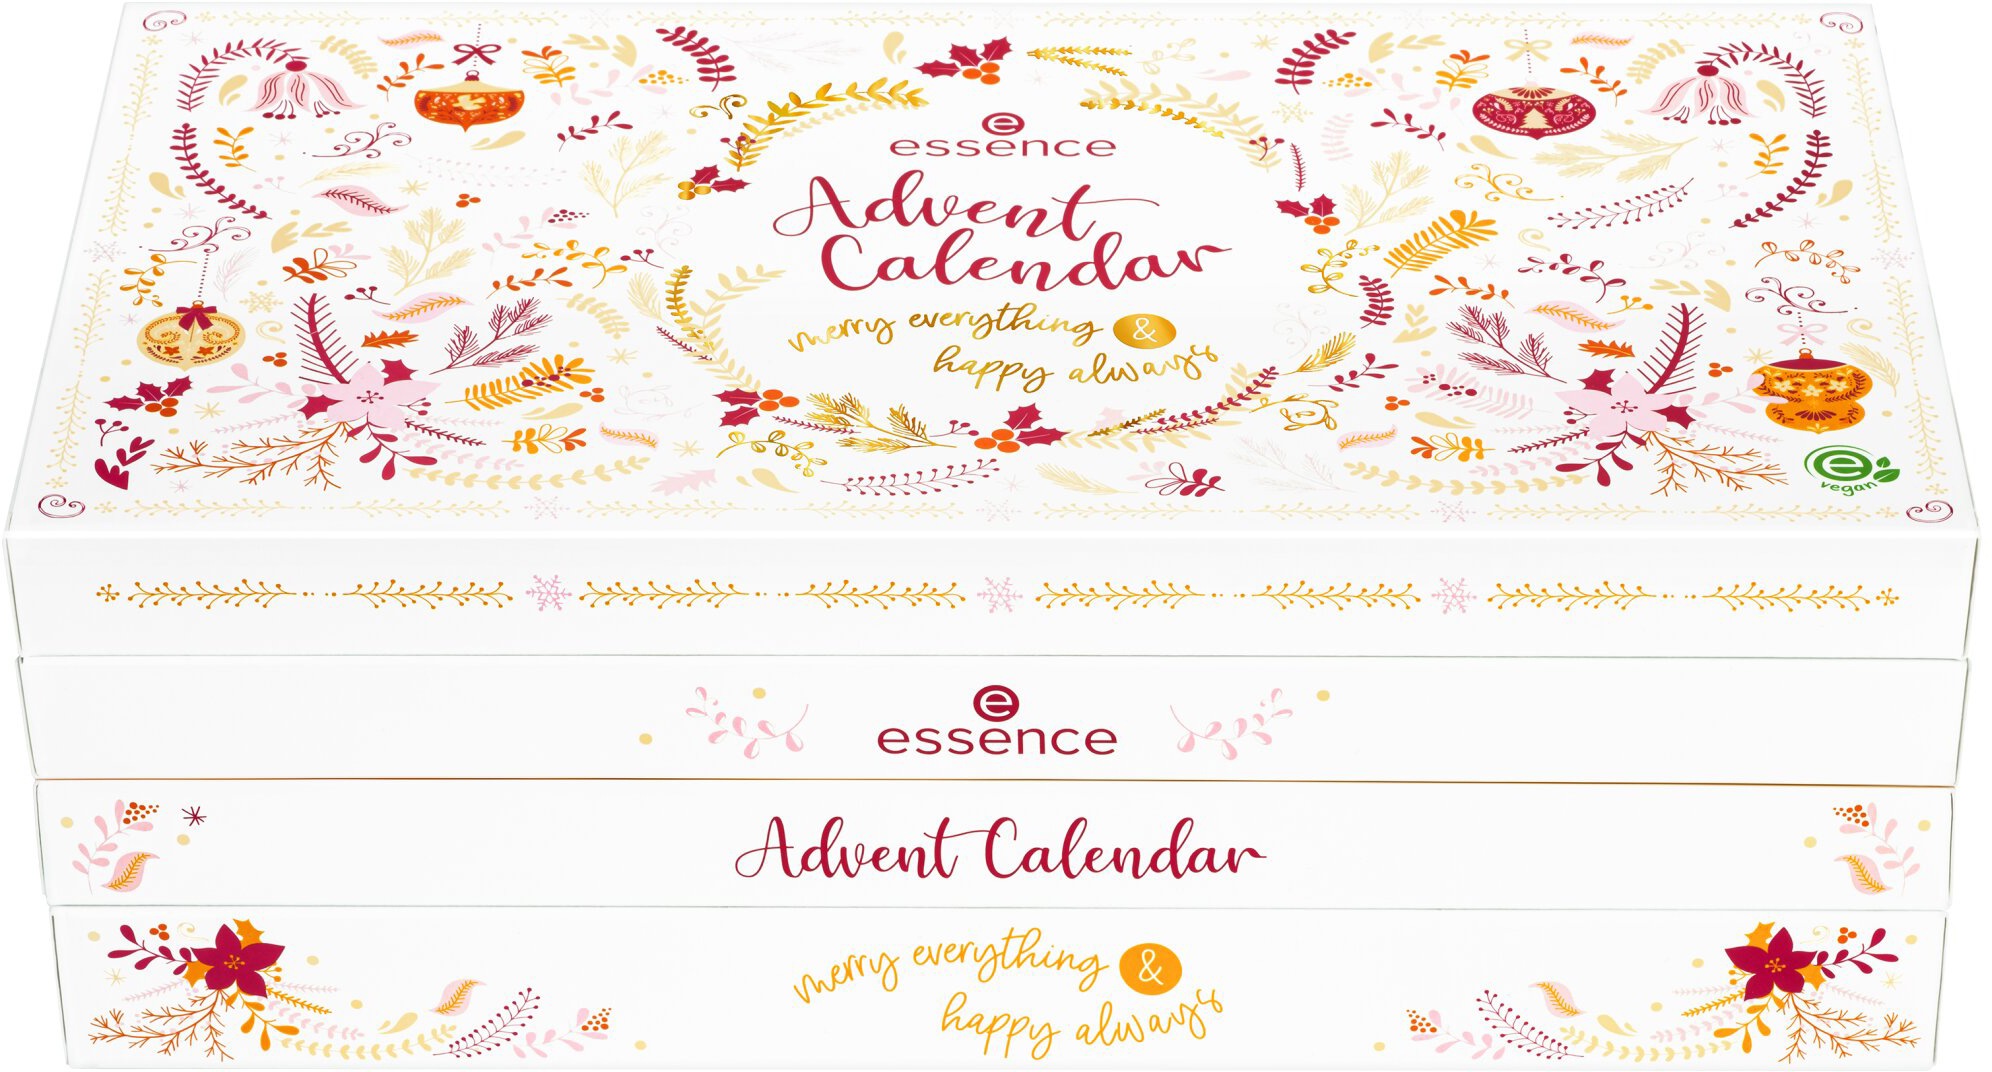 merry always«, 14 Calendar Adventskalender everything Jahren online »Advent & happy Essence ab bei